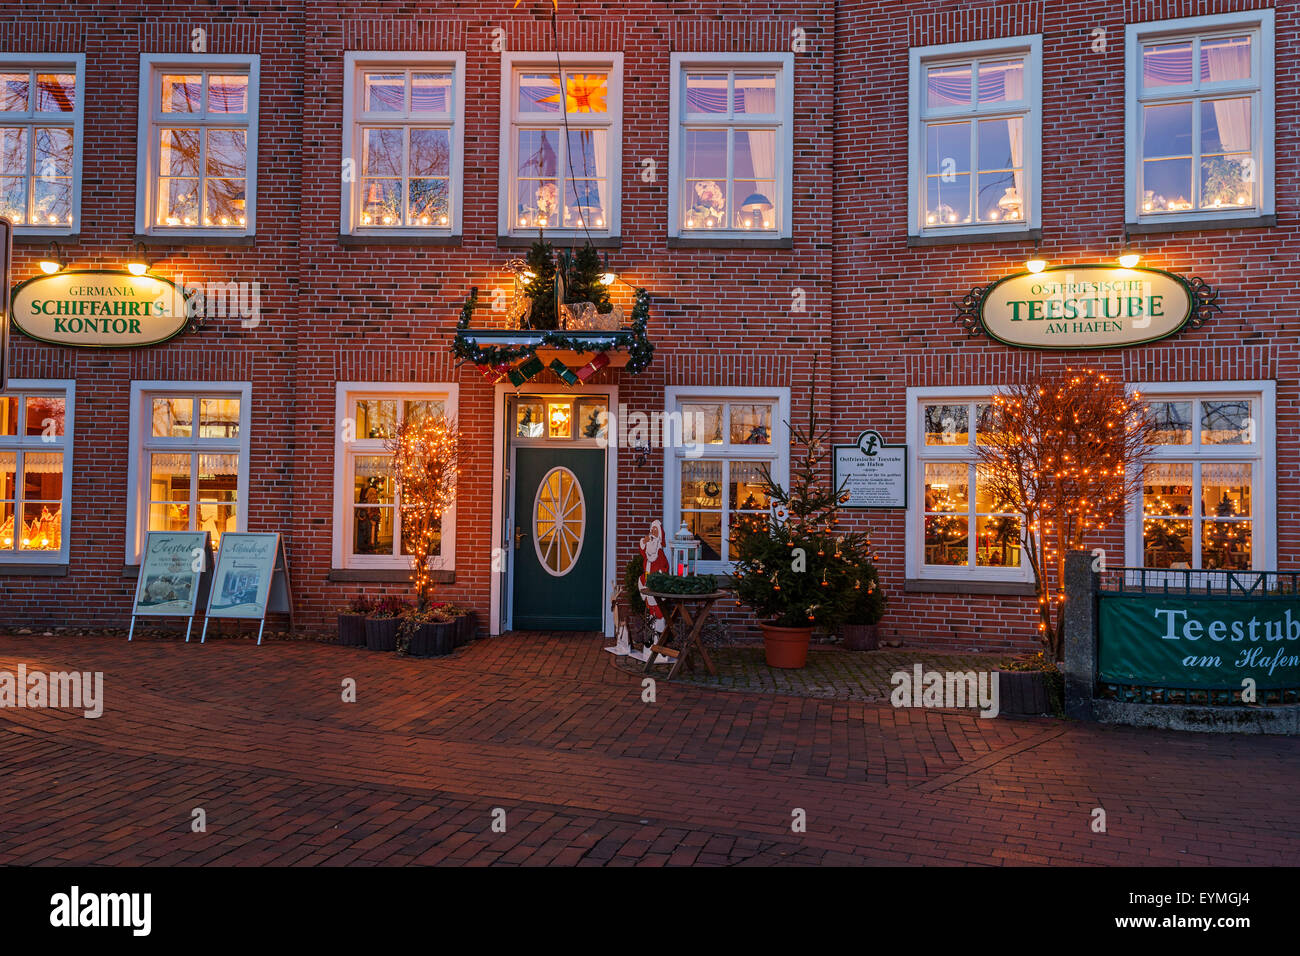 Christmas, 'Ostfriesische Teestube am Hafen' in Leer Stock Photo